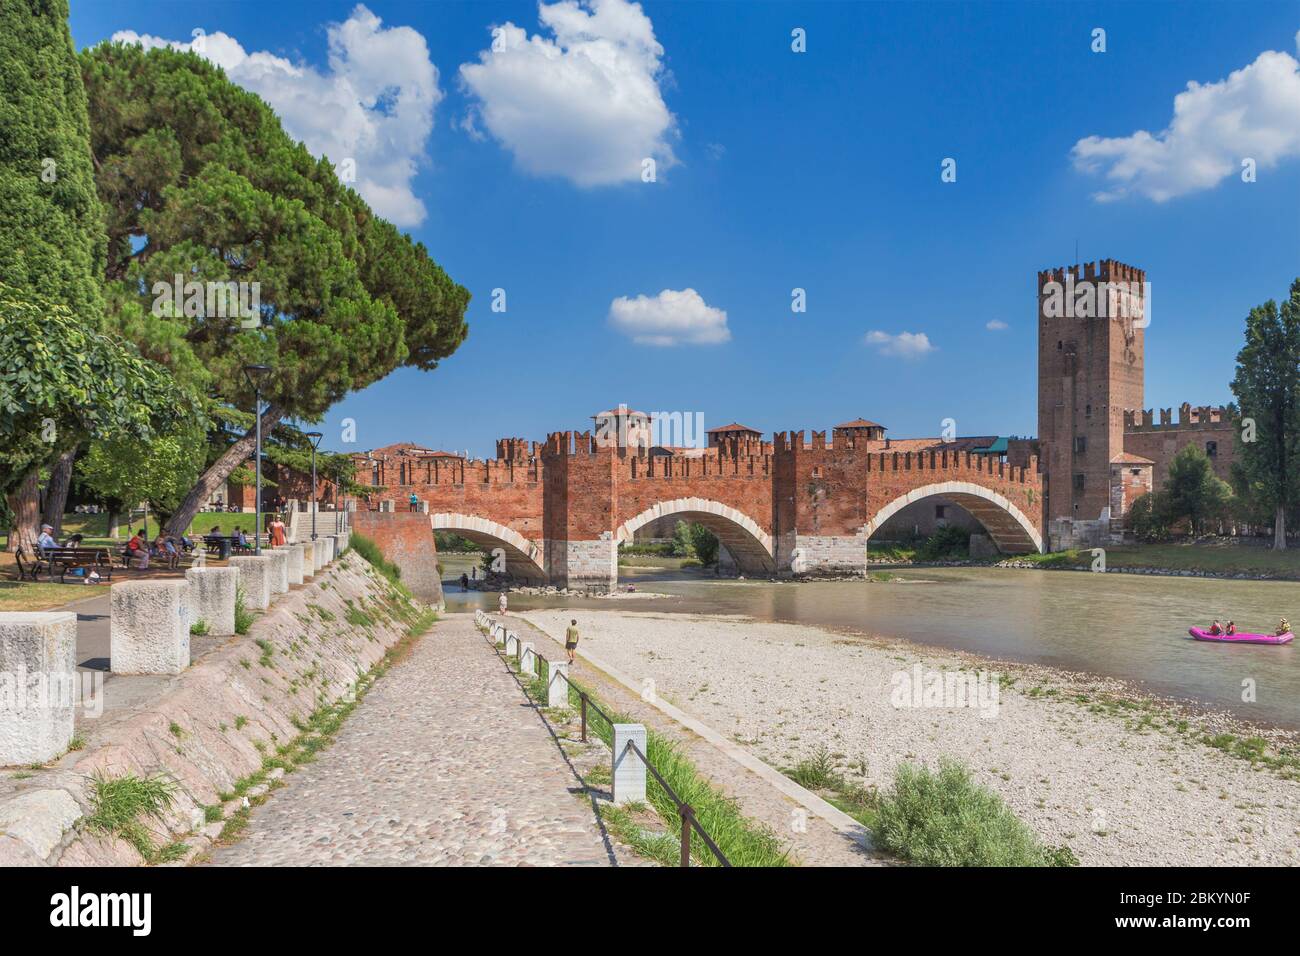 Castelvecchio castillo y puente, Verona, Veneto, Italia Foto de stock